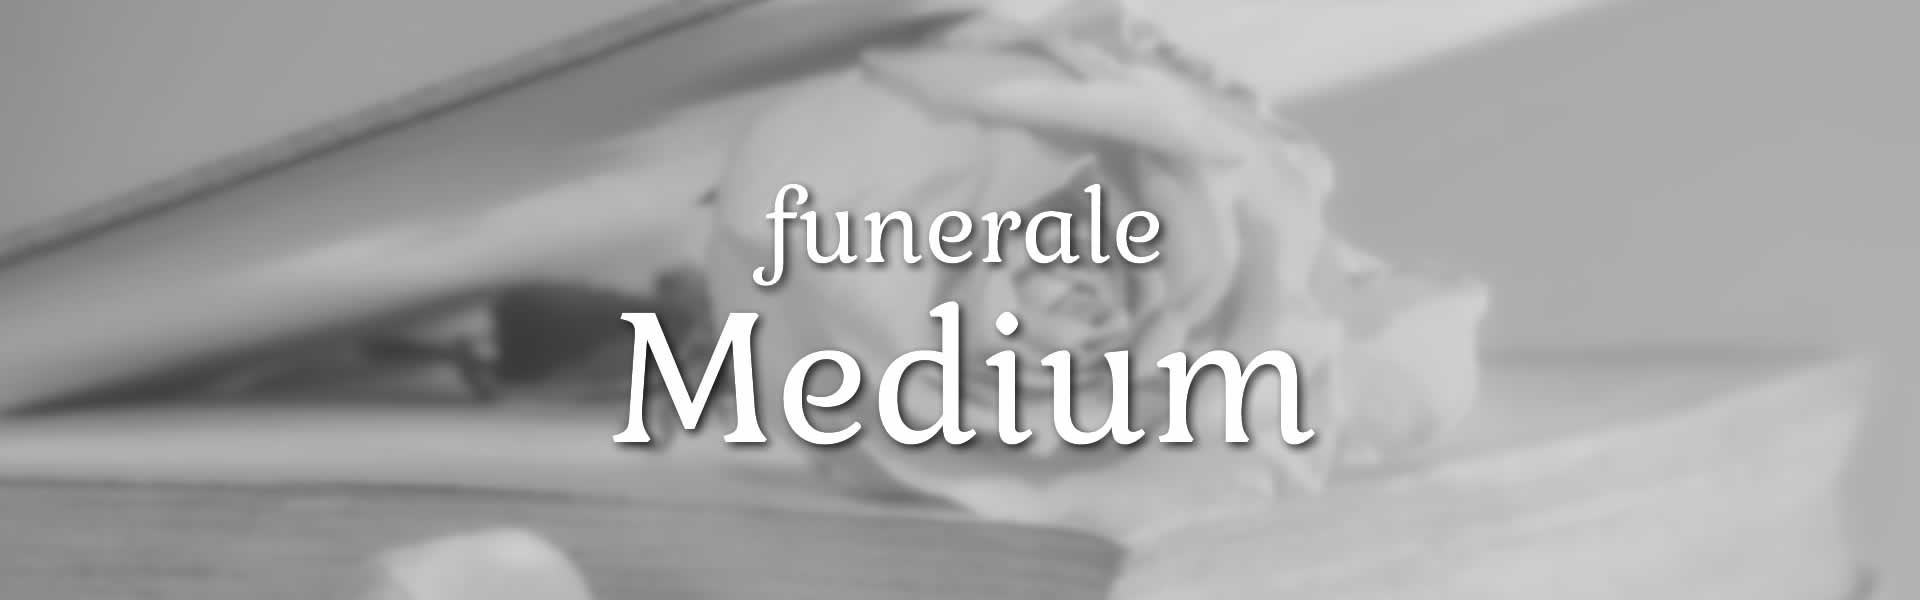 Prezzi funerali medium